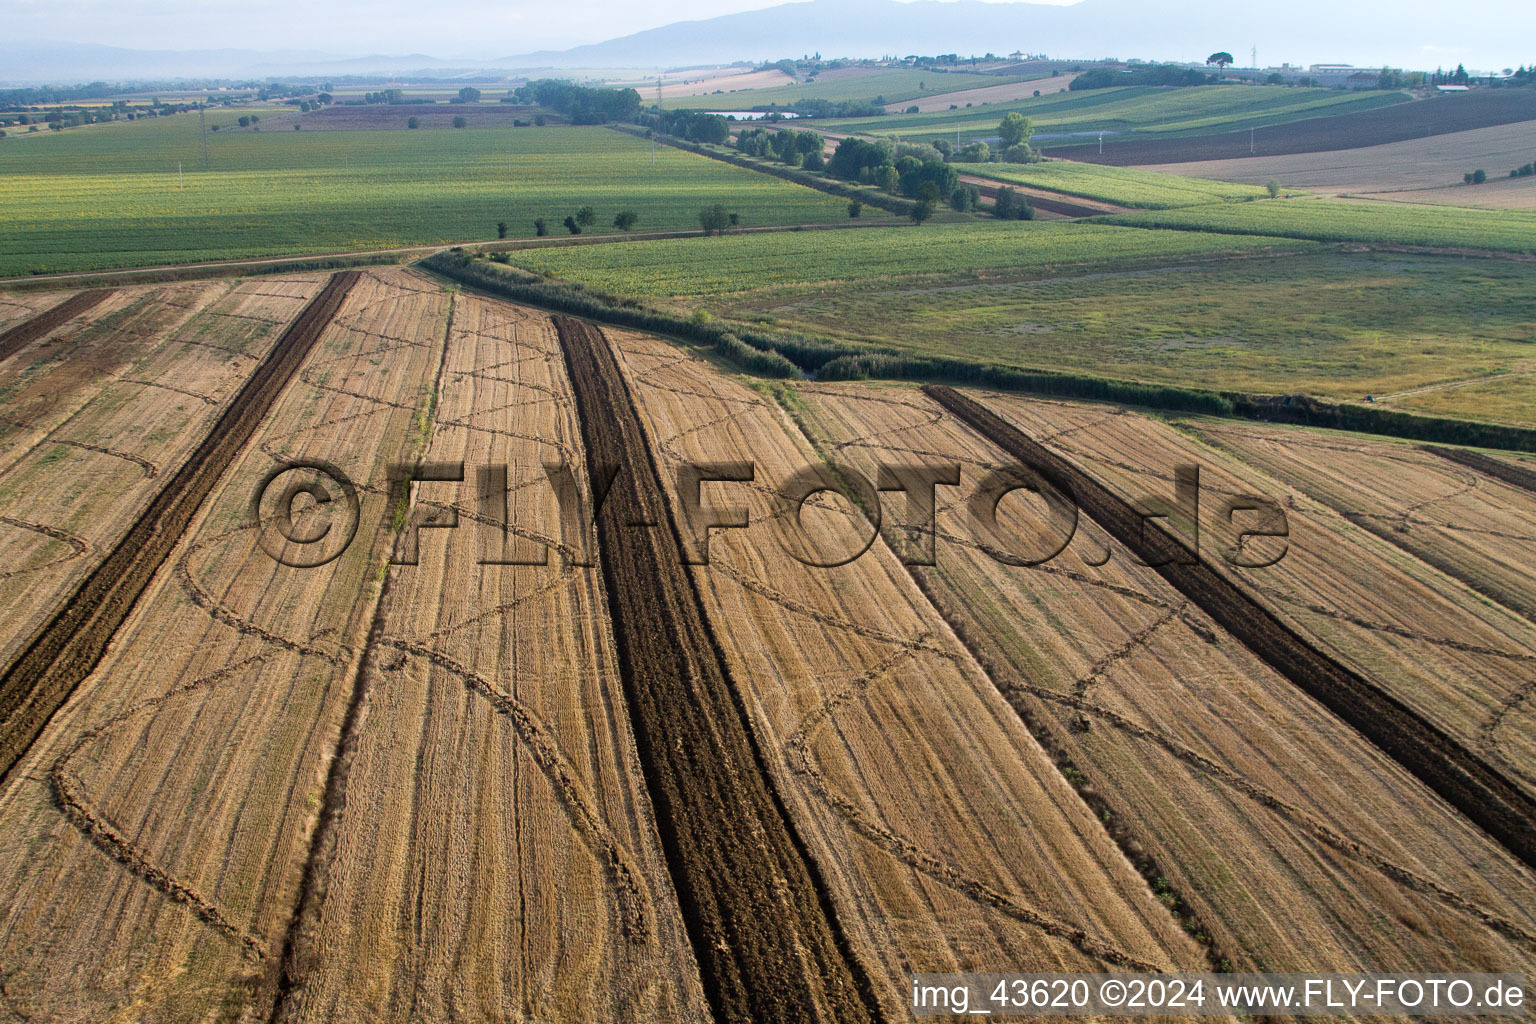 Luftbild von Abgeerntete Kornfeld-Strukturen Landschaft auf einem Getreidefeld in Anatraia in Toscana, Italien